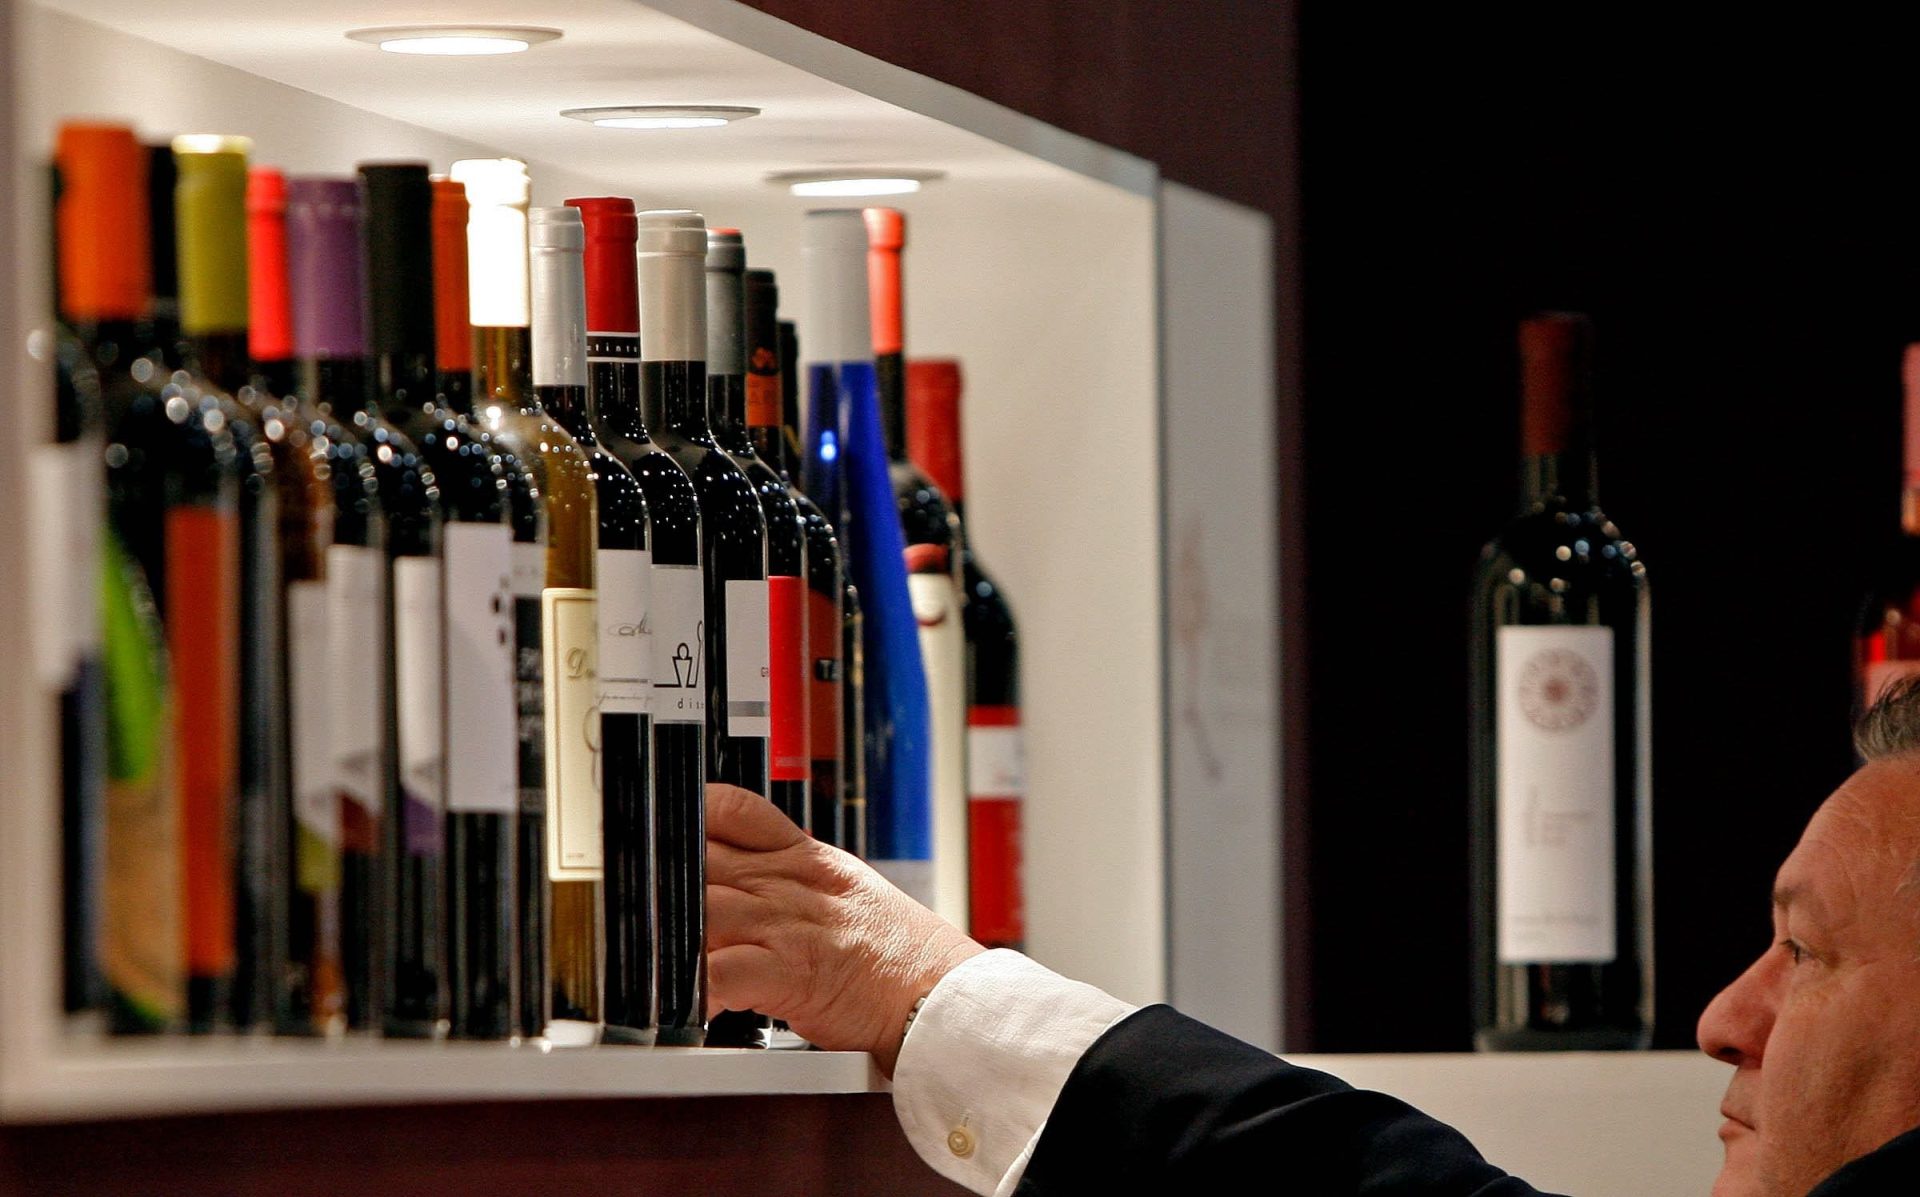 Un hombre observa vinos valencianos en una muestra. Efeagro/Manuel Bruque